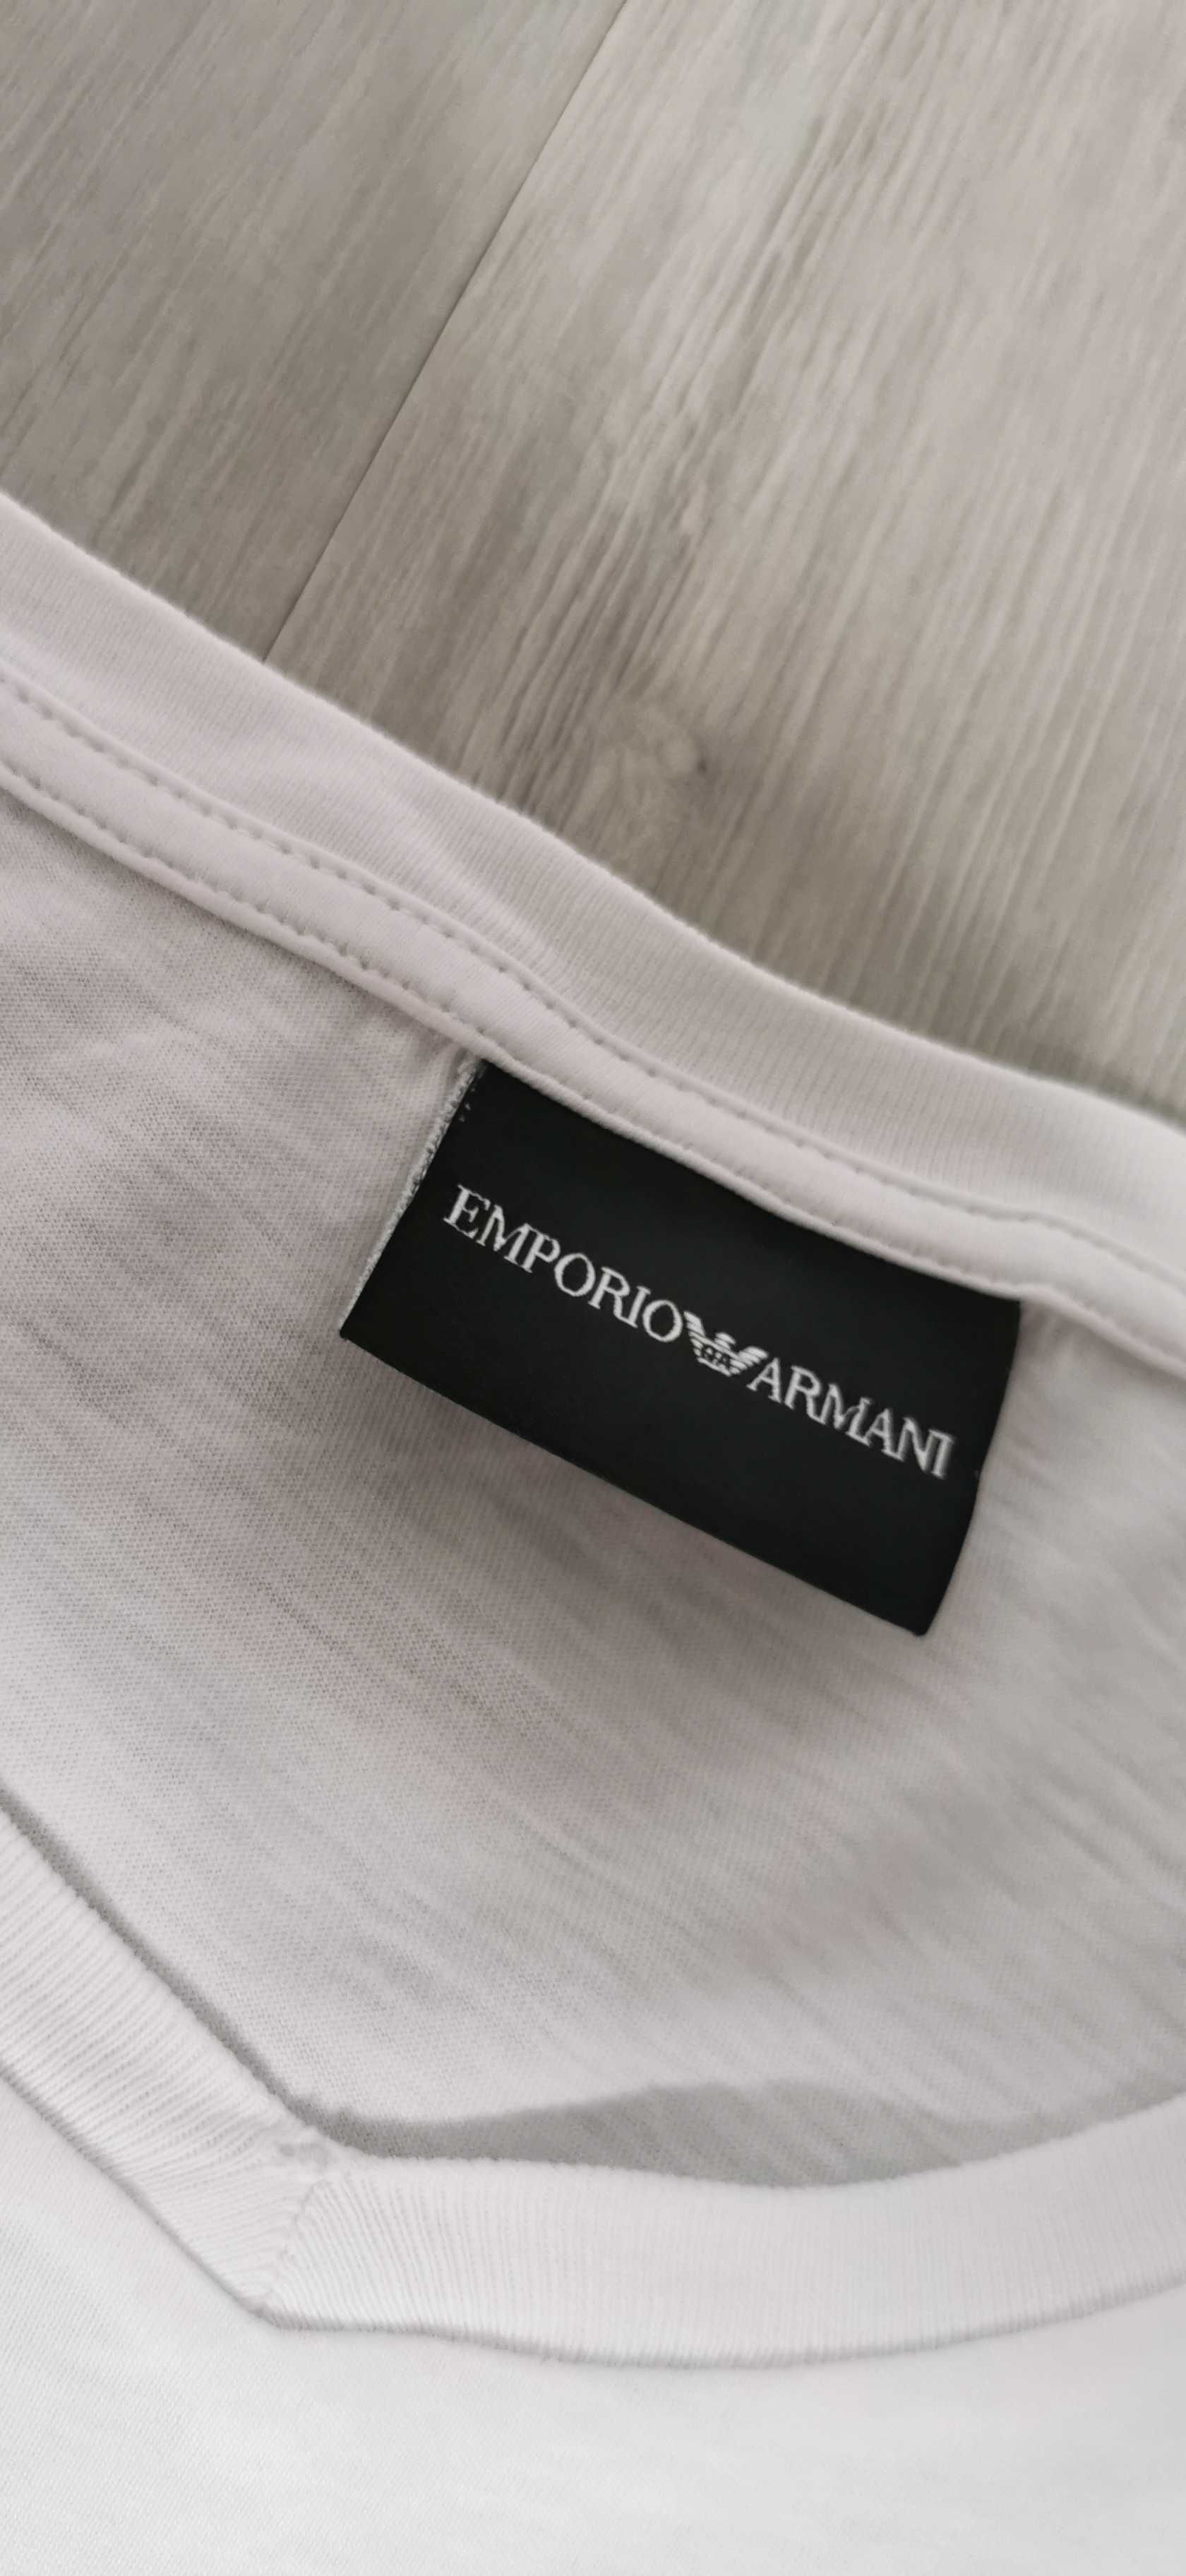 T-shirt Emporio Armani rozmiar M/L biały